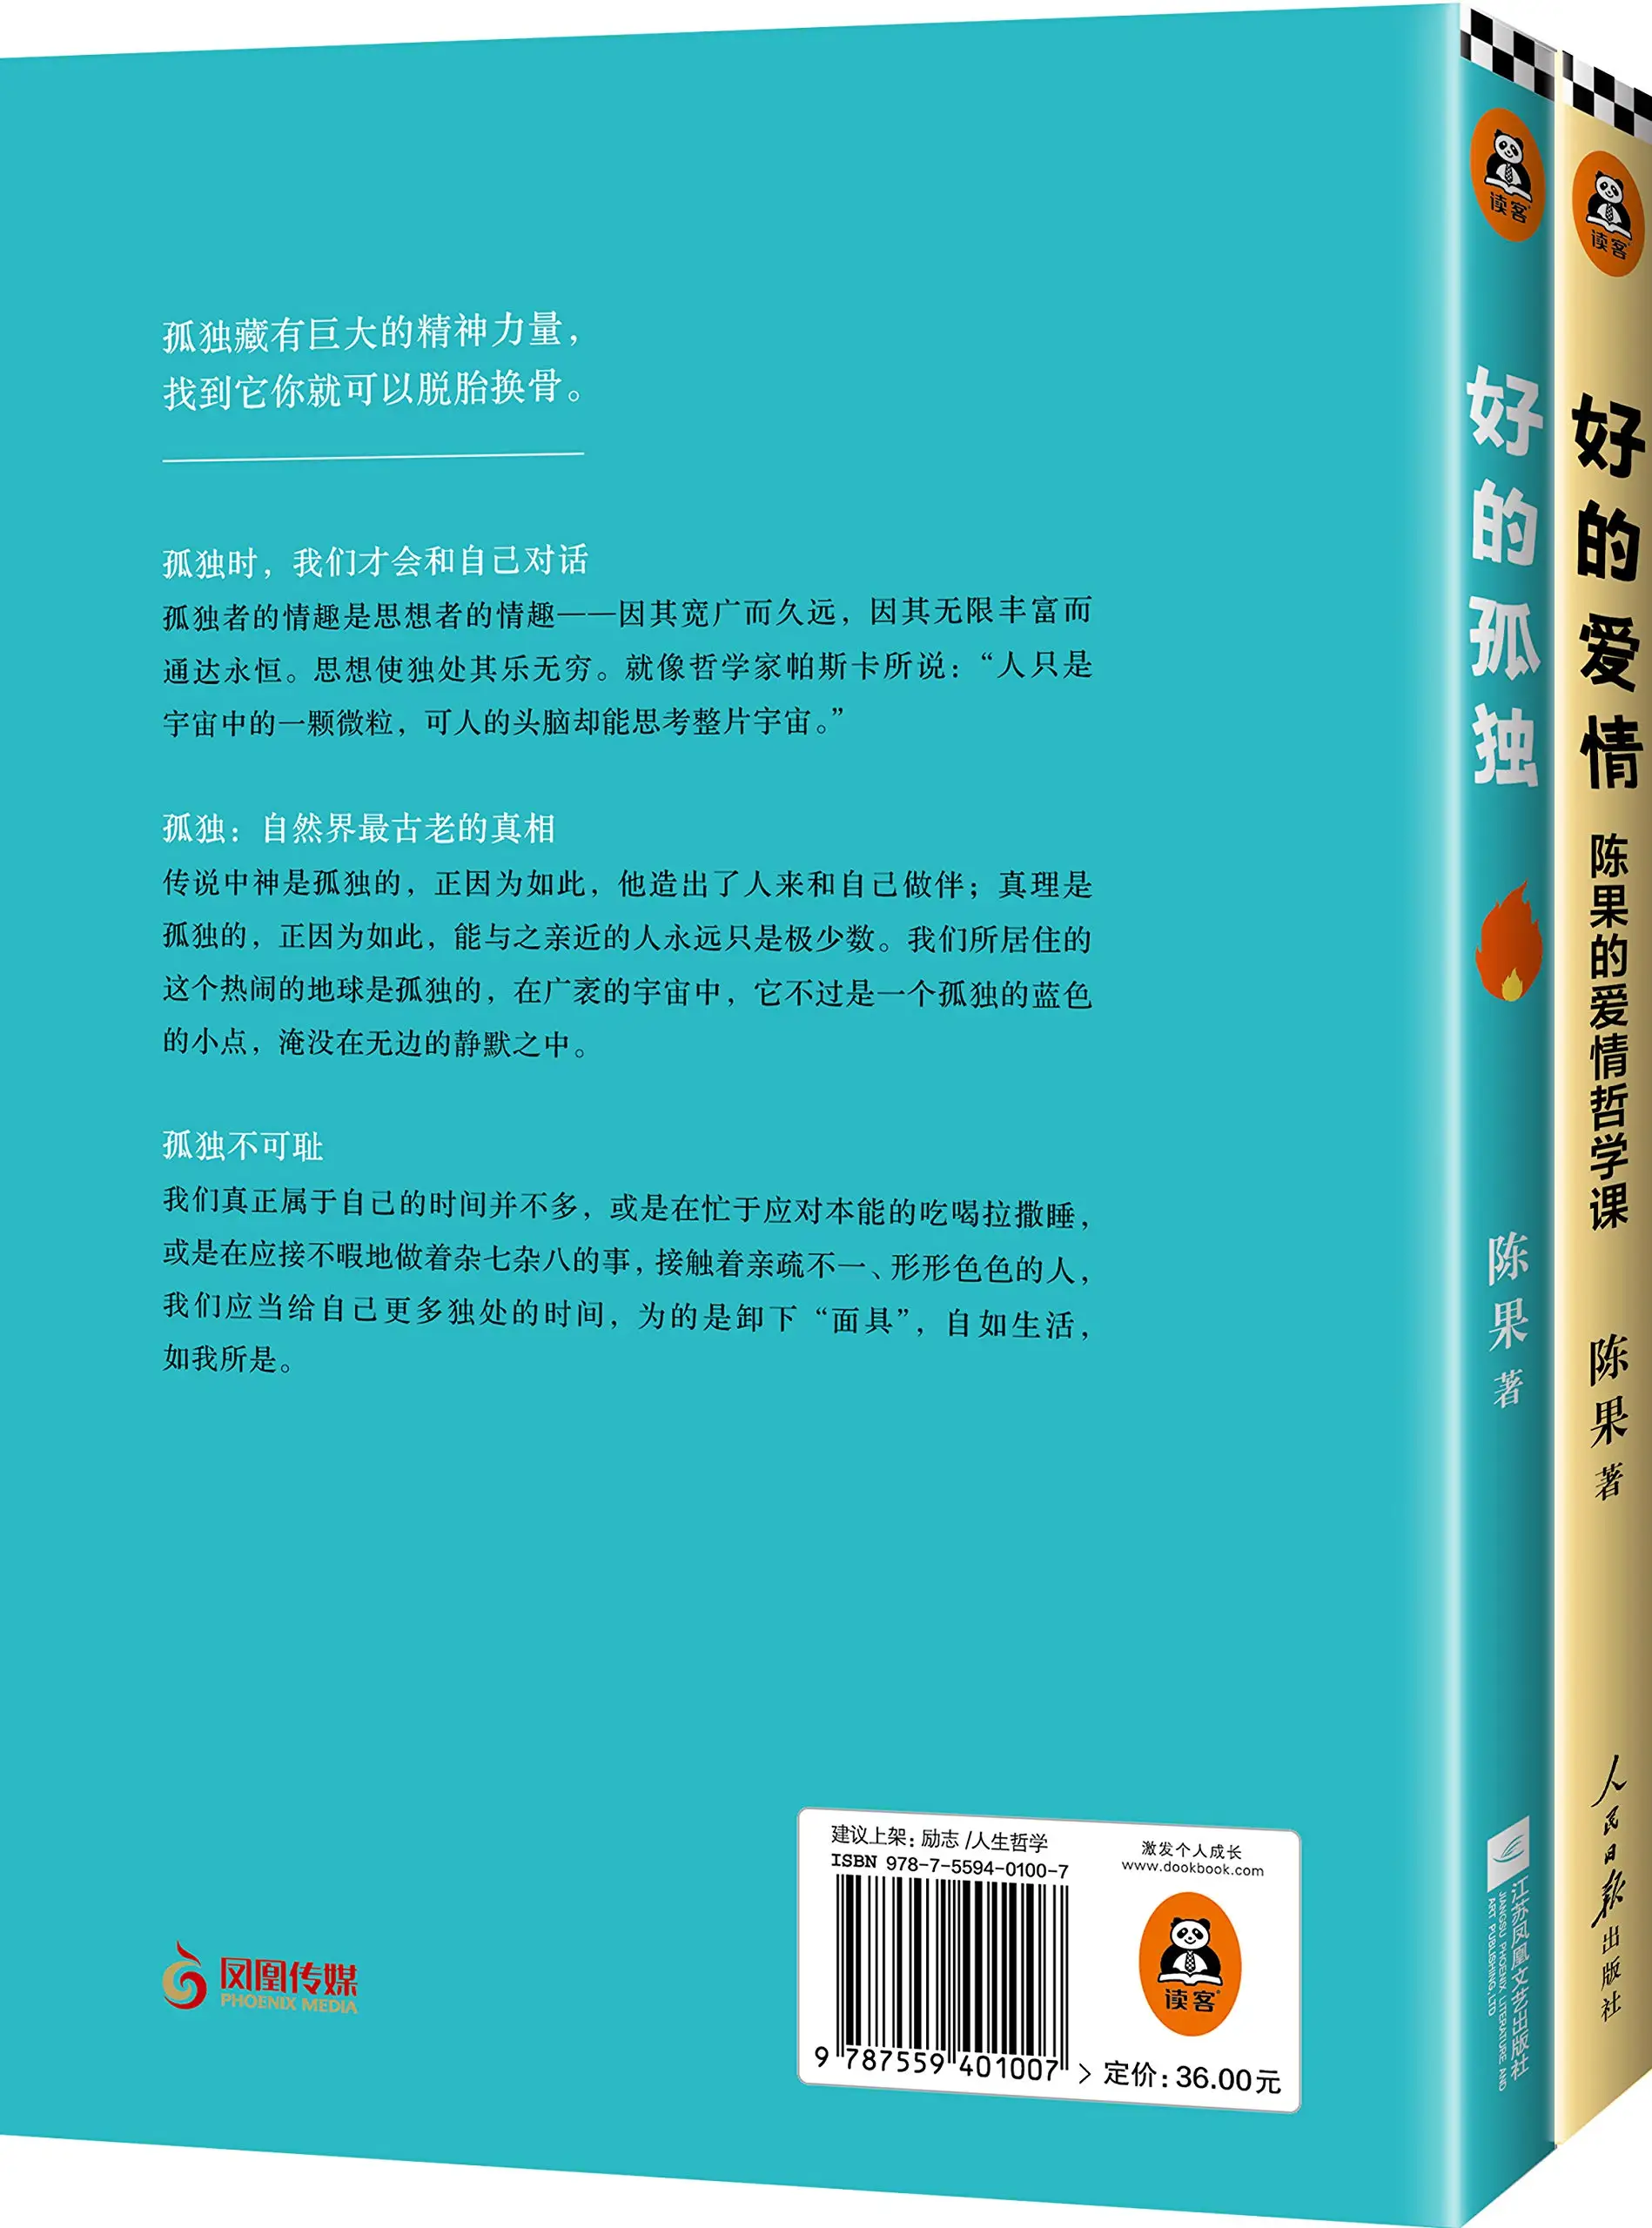 Известный учитель фудан Чэнь го: хорошо одиноко+ хорошая любовь(всего 2 тома